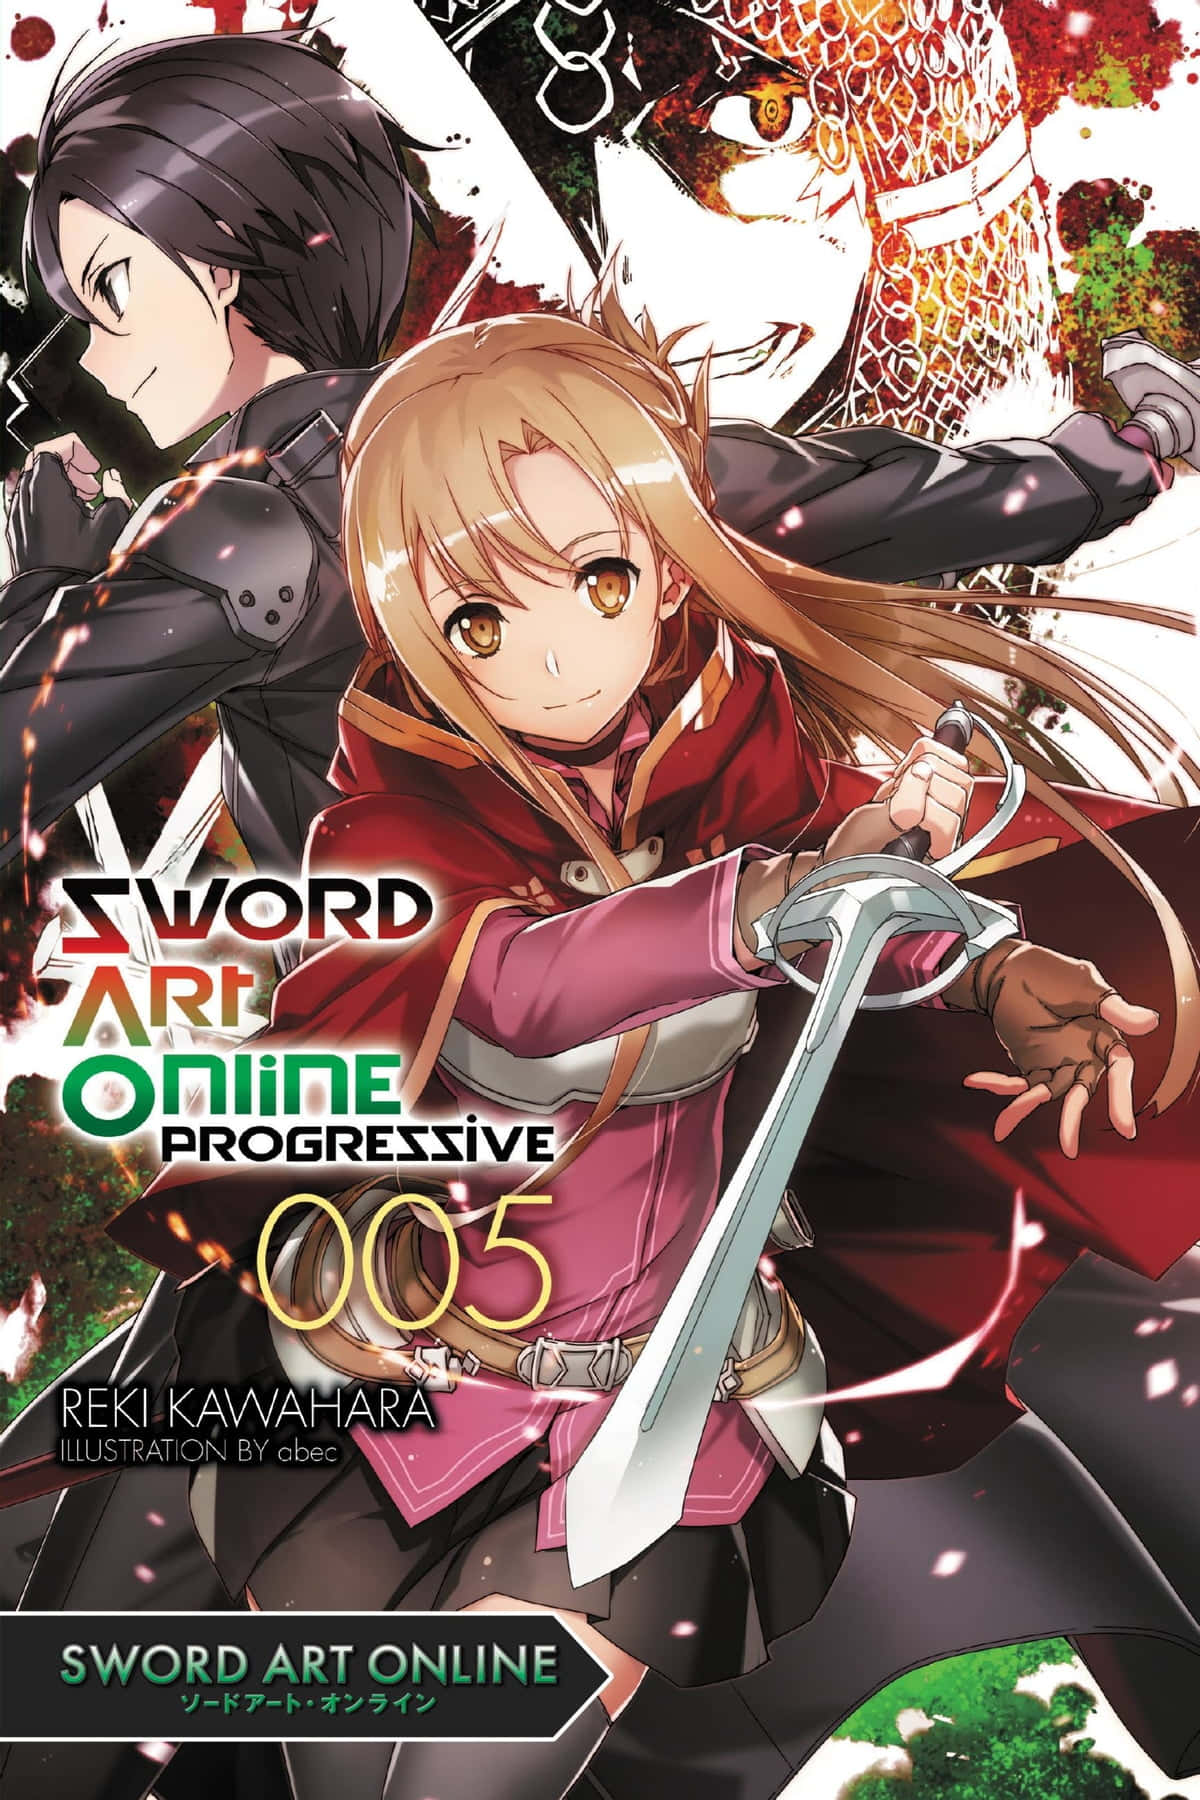 Tag på eventyr til næste niveau med Sword Art Online wallpaper.